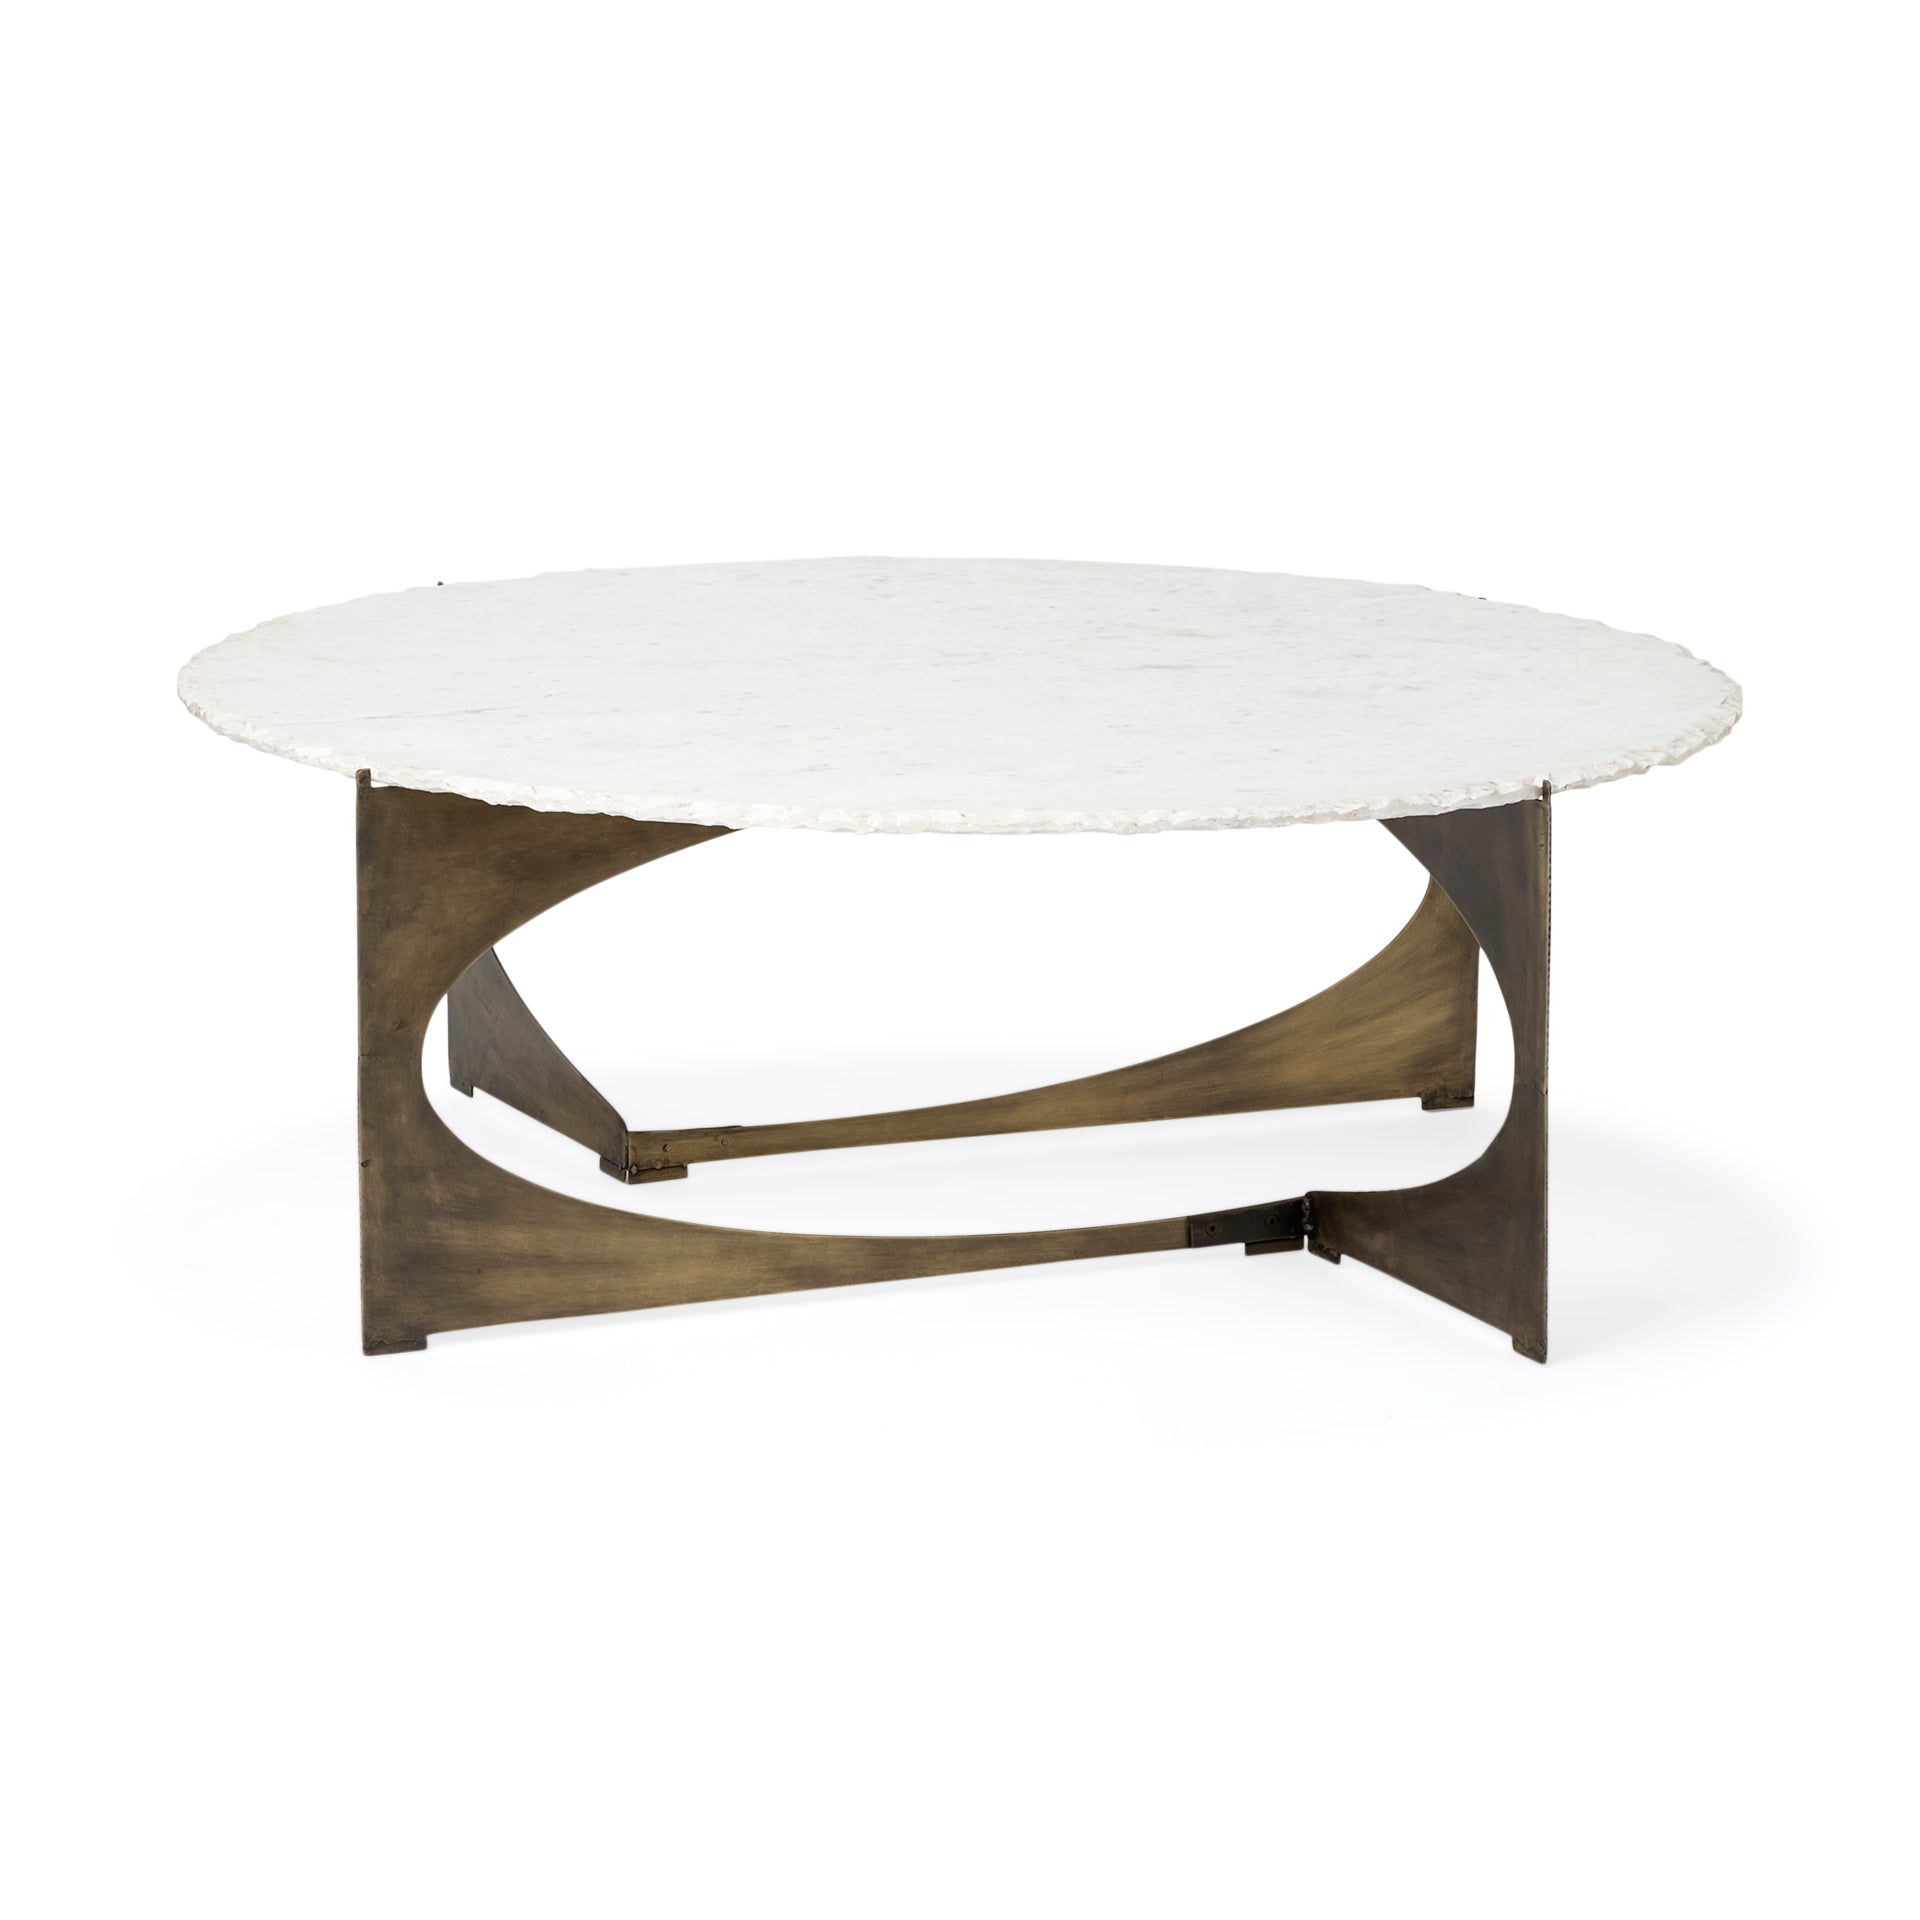 Reinhold Round Coffee Table - White